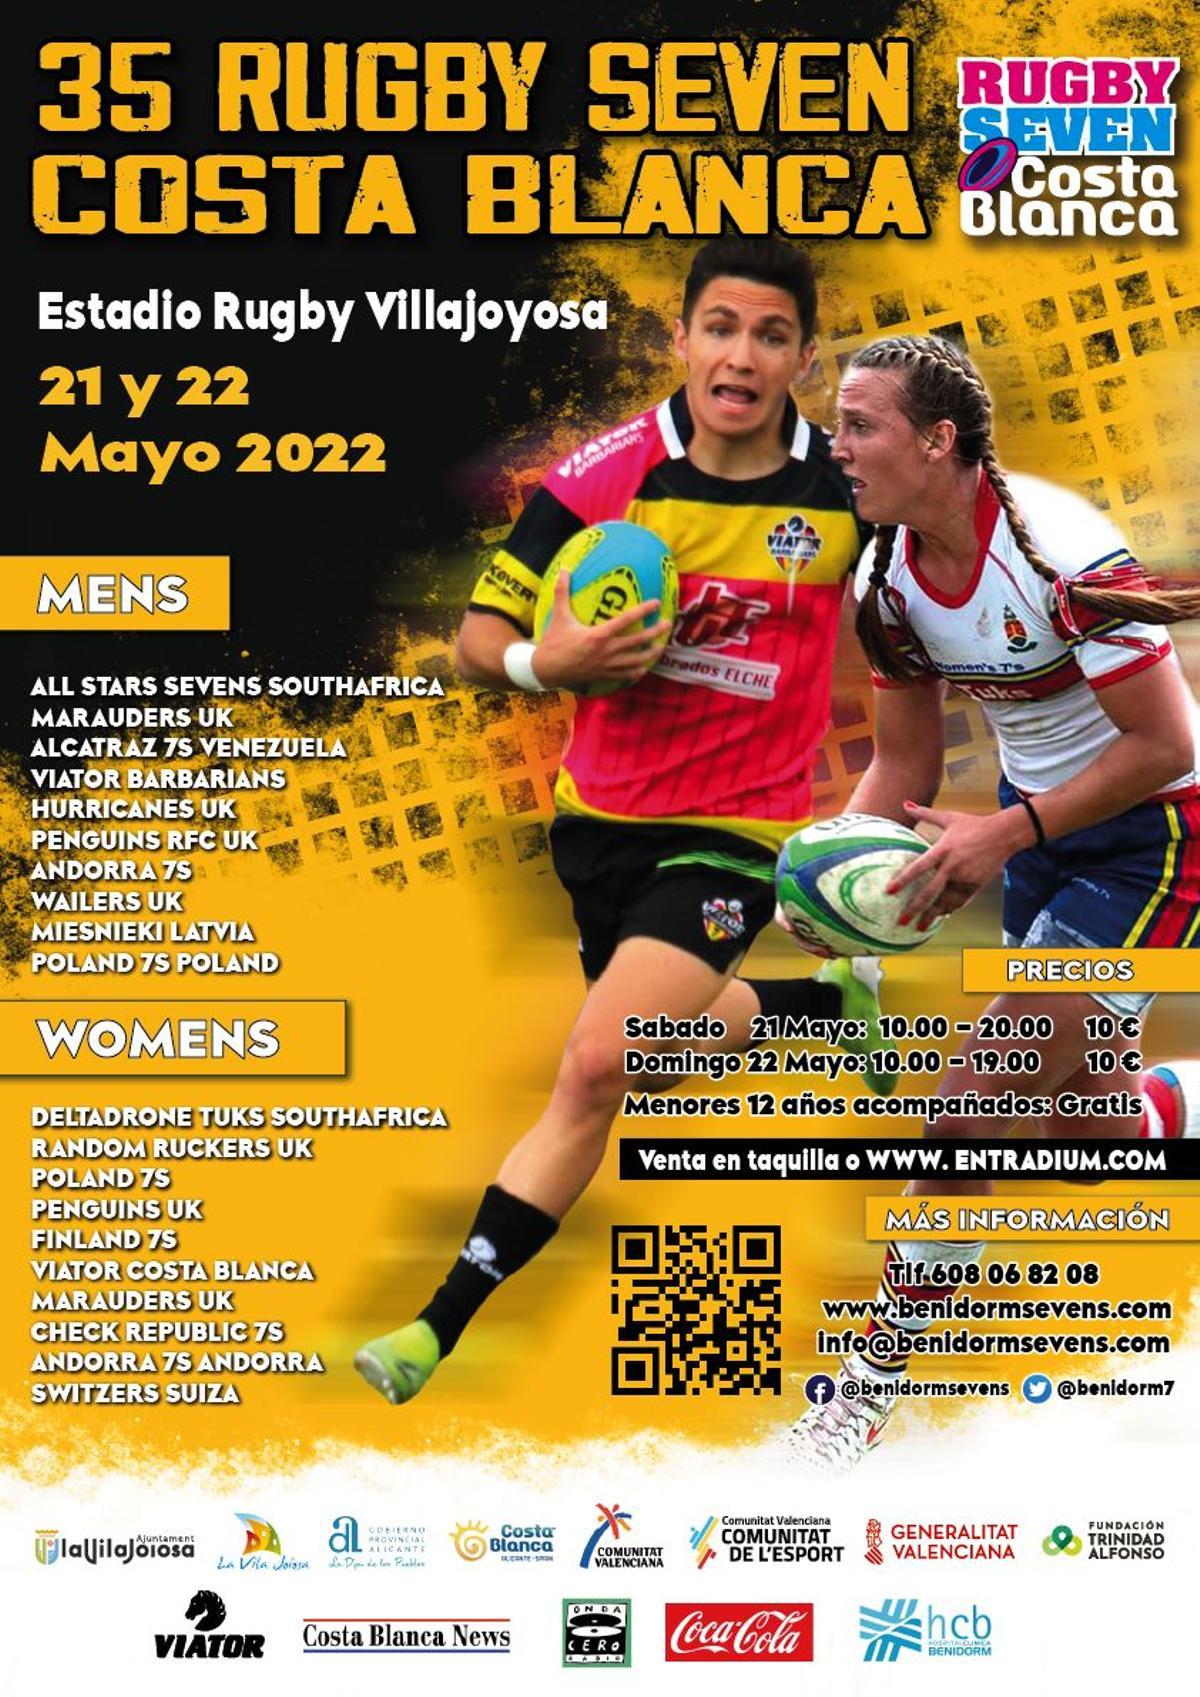 El Costa Blanca Rugby Seven's vuelve por todo lo alto a tierras alicantinas del 20 al 22 de mayo.